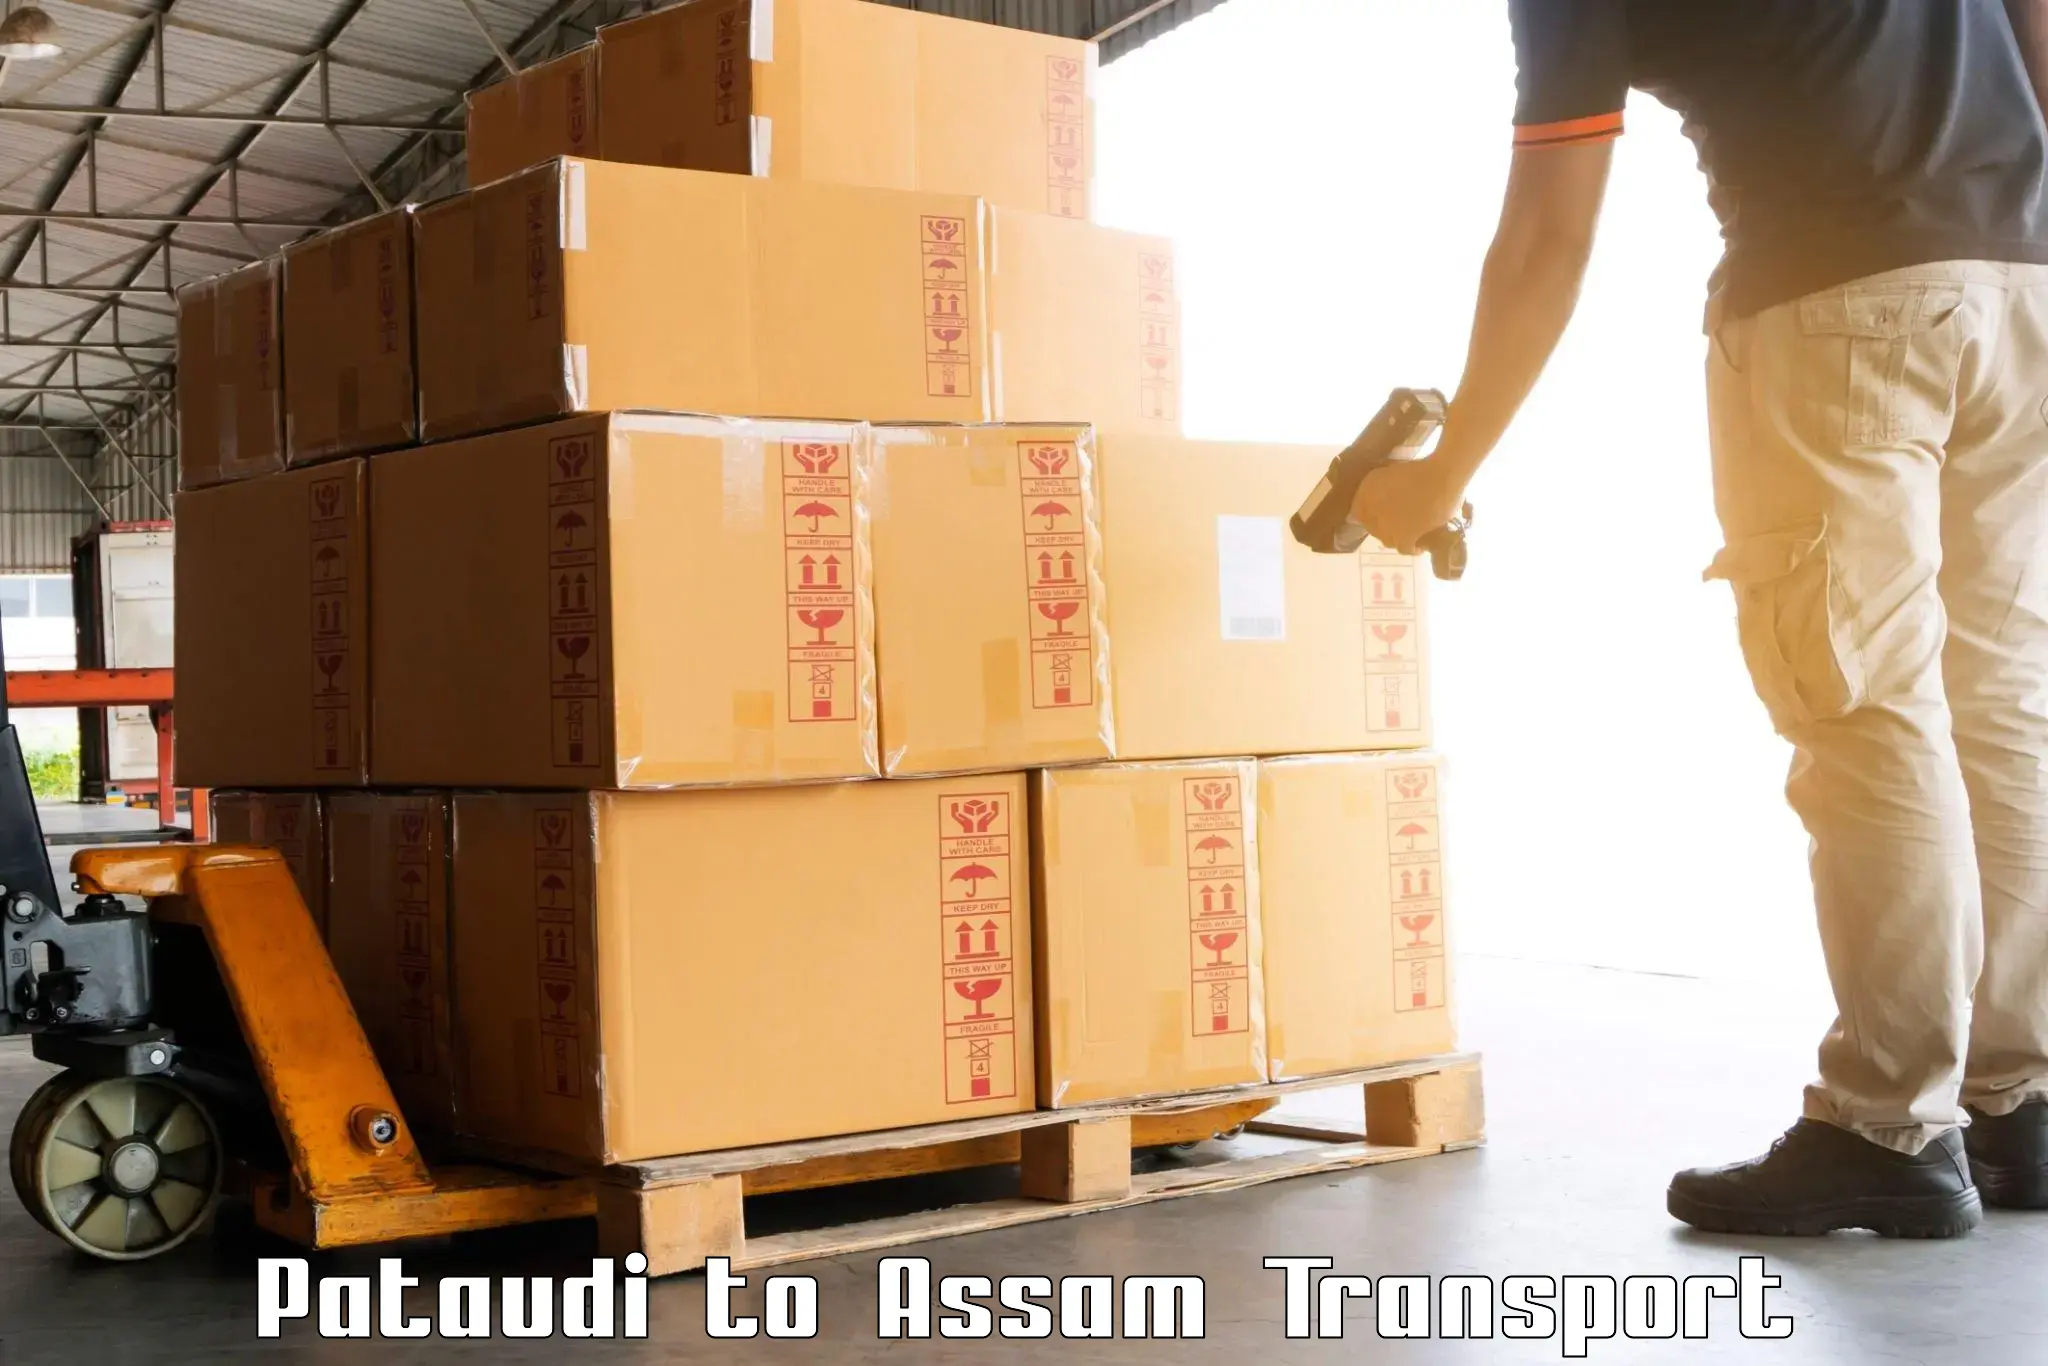 Air cargo transport services Pataudi to Chabua